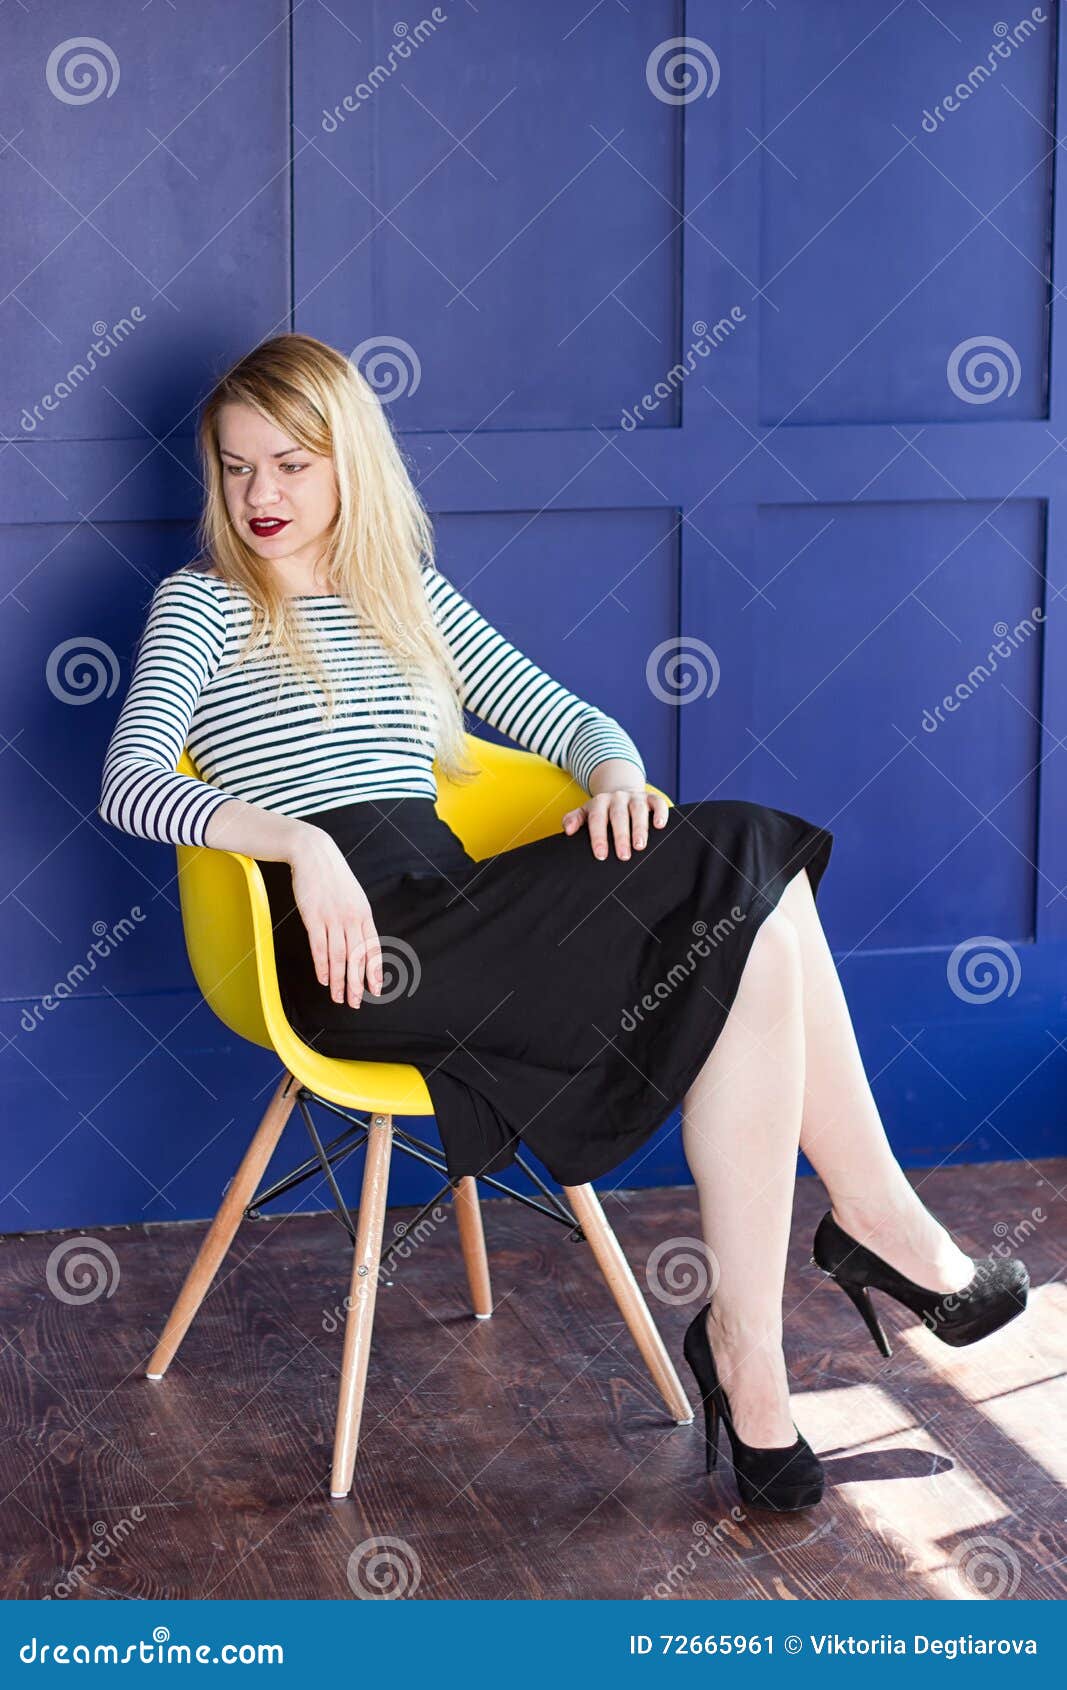 Vollbusige Blondine masturbiert auf einem Stuhl